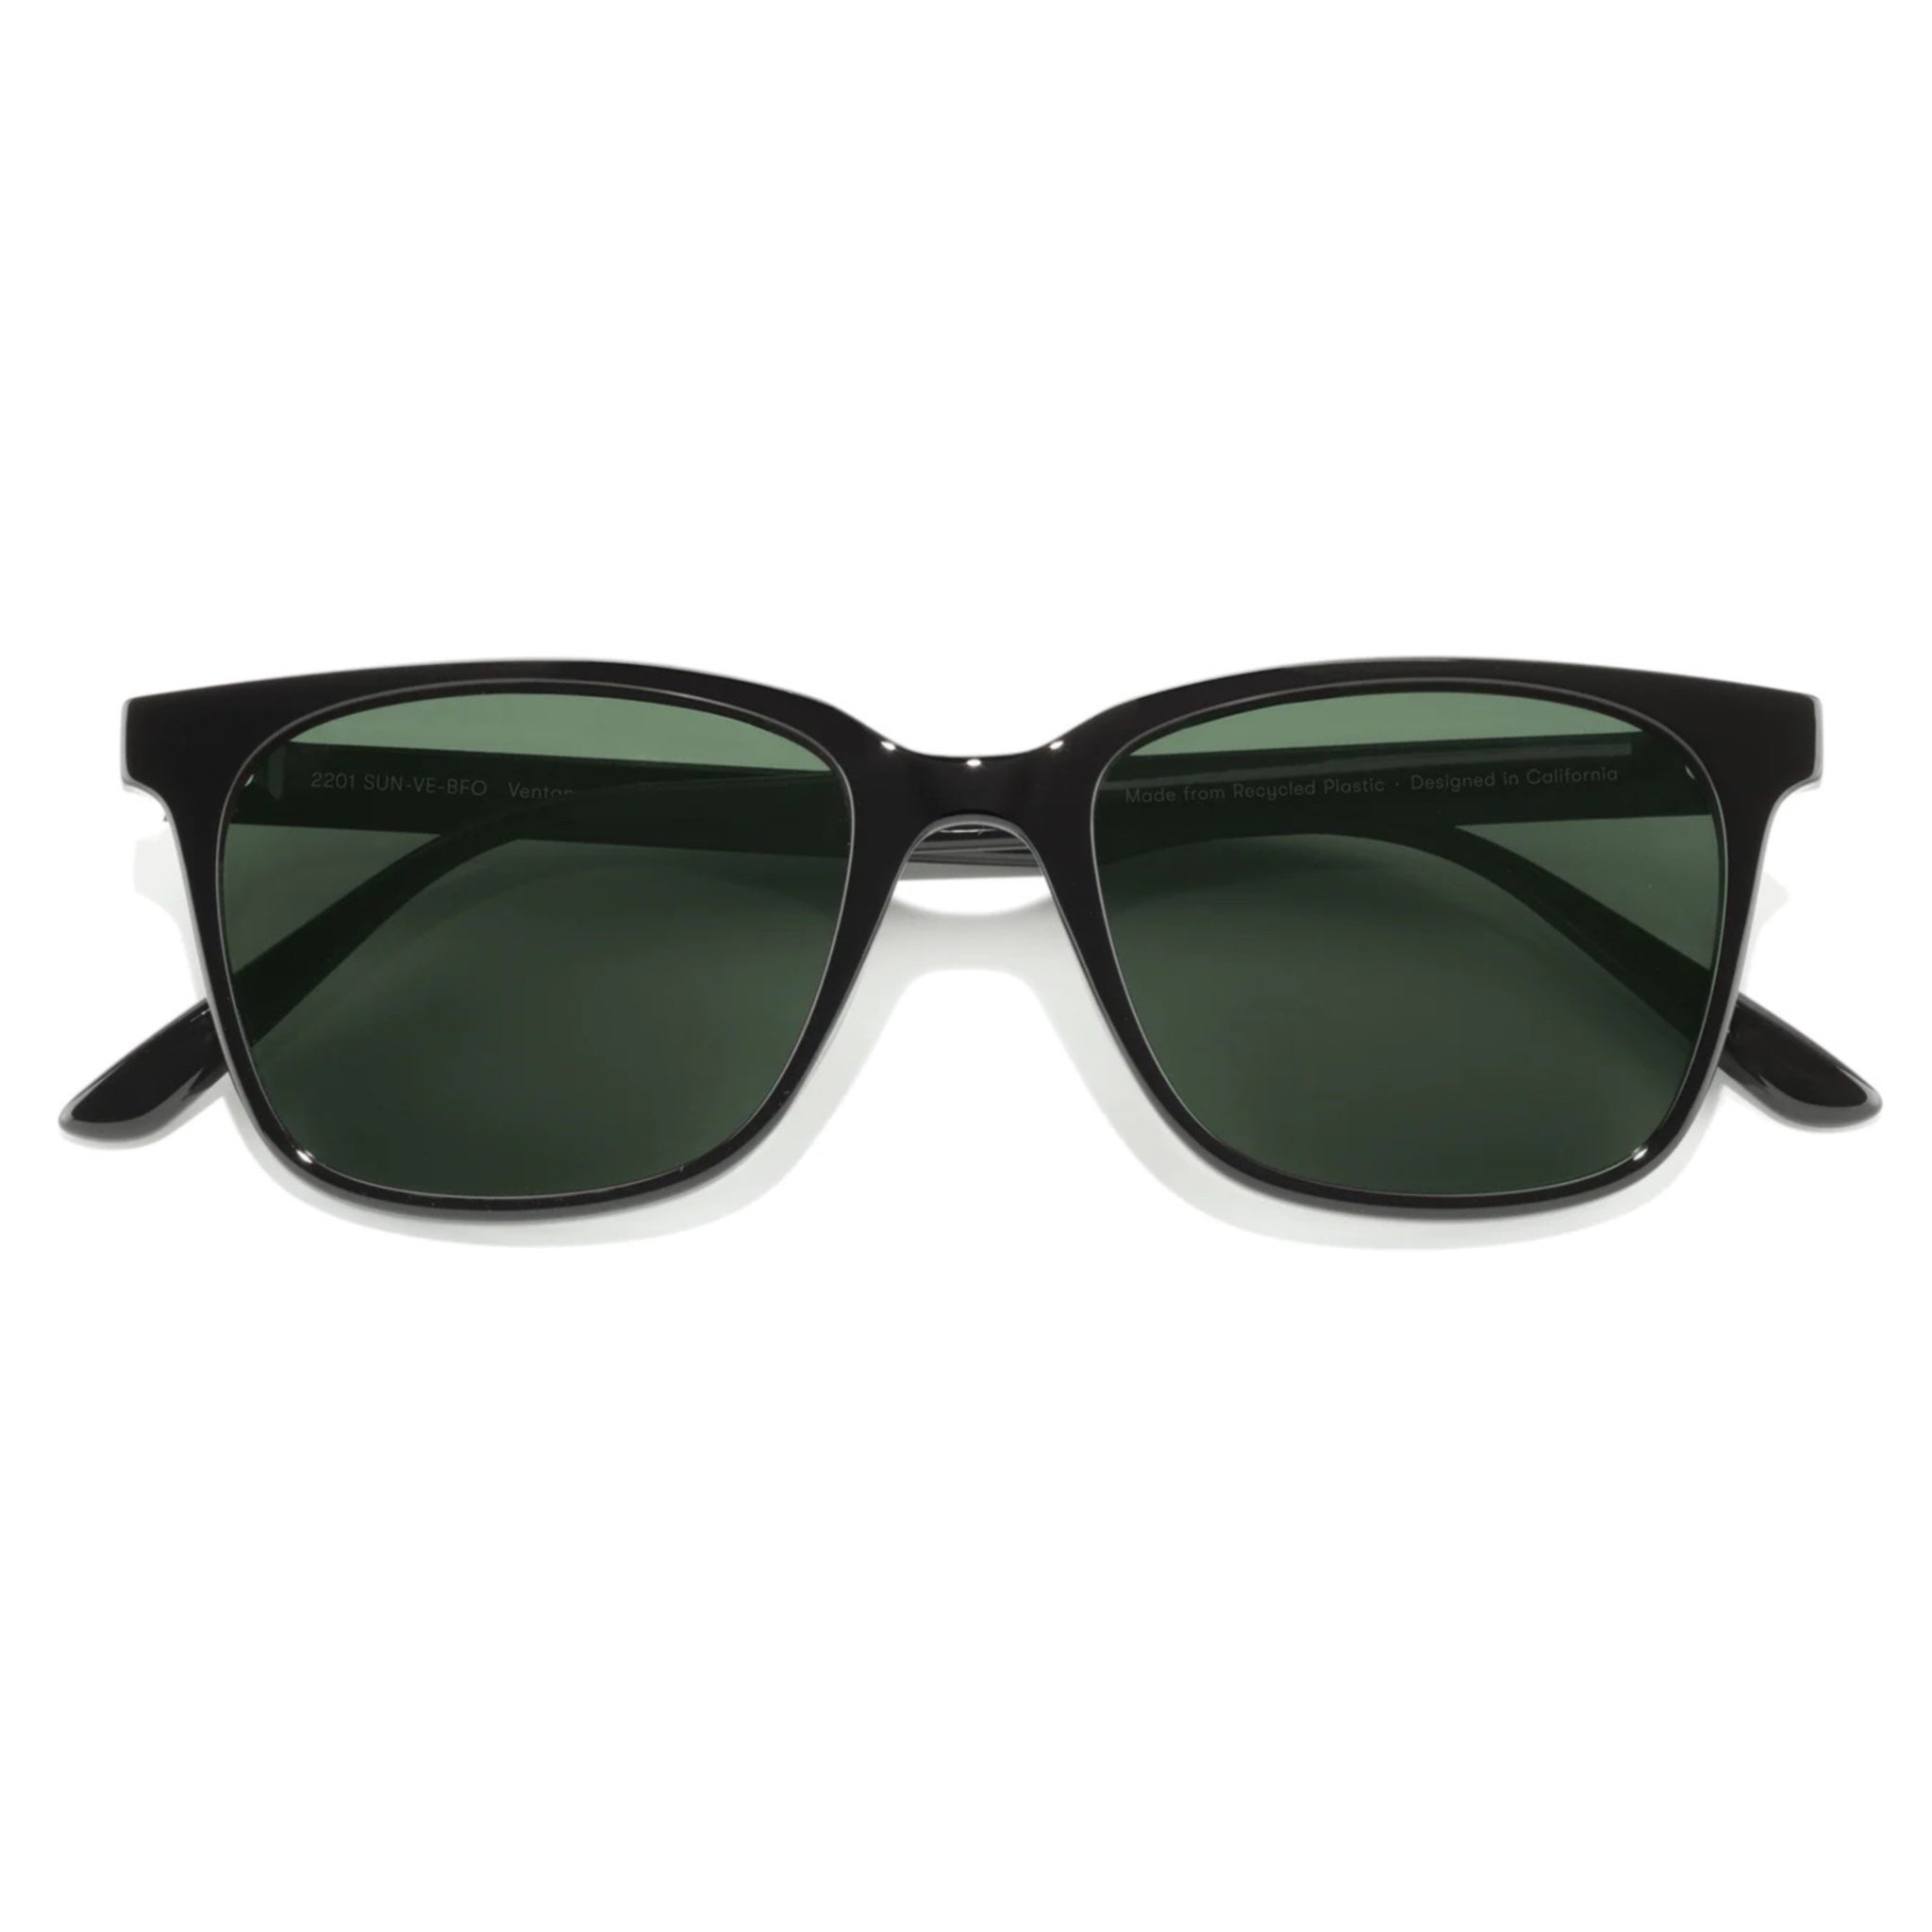 Sunski Ventana Polarised Sunglasses - Black Forest